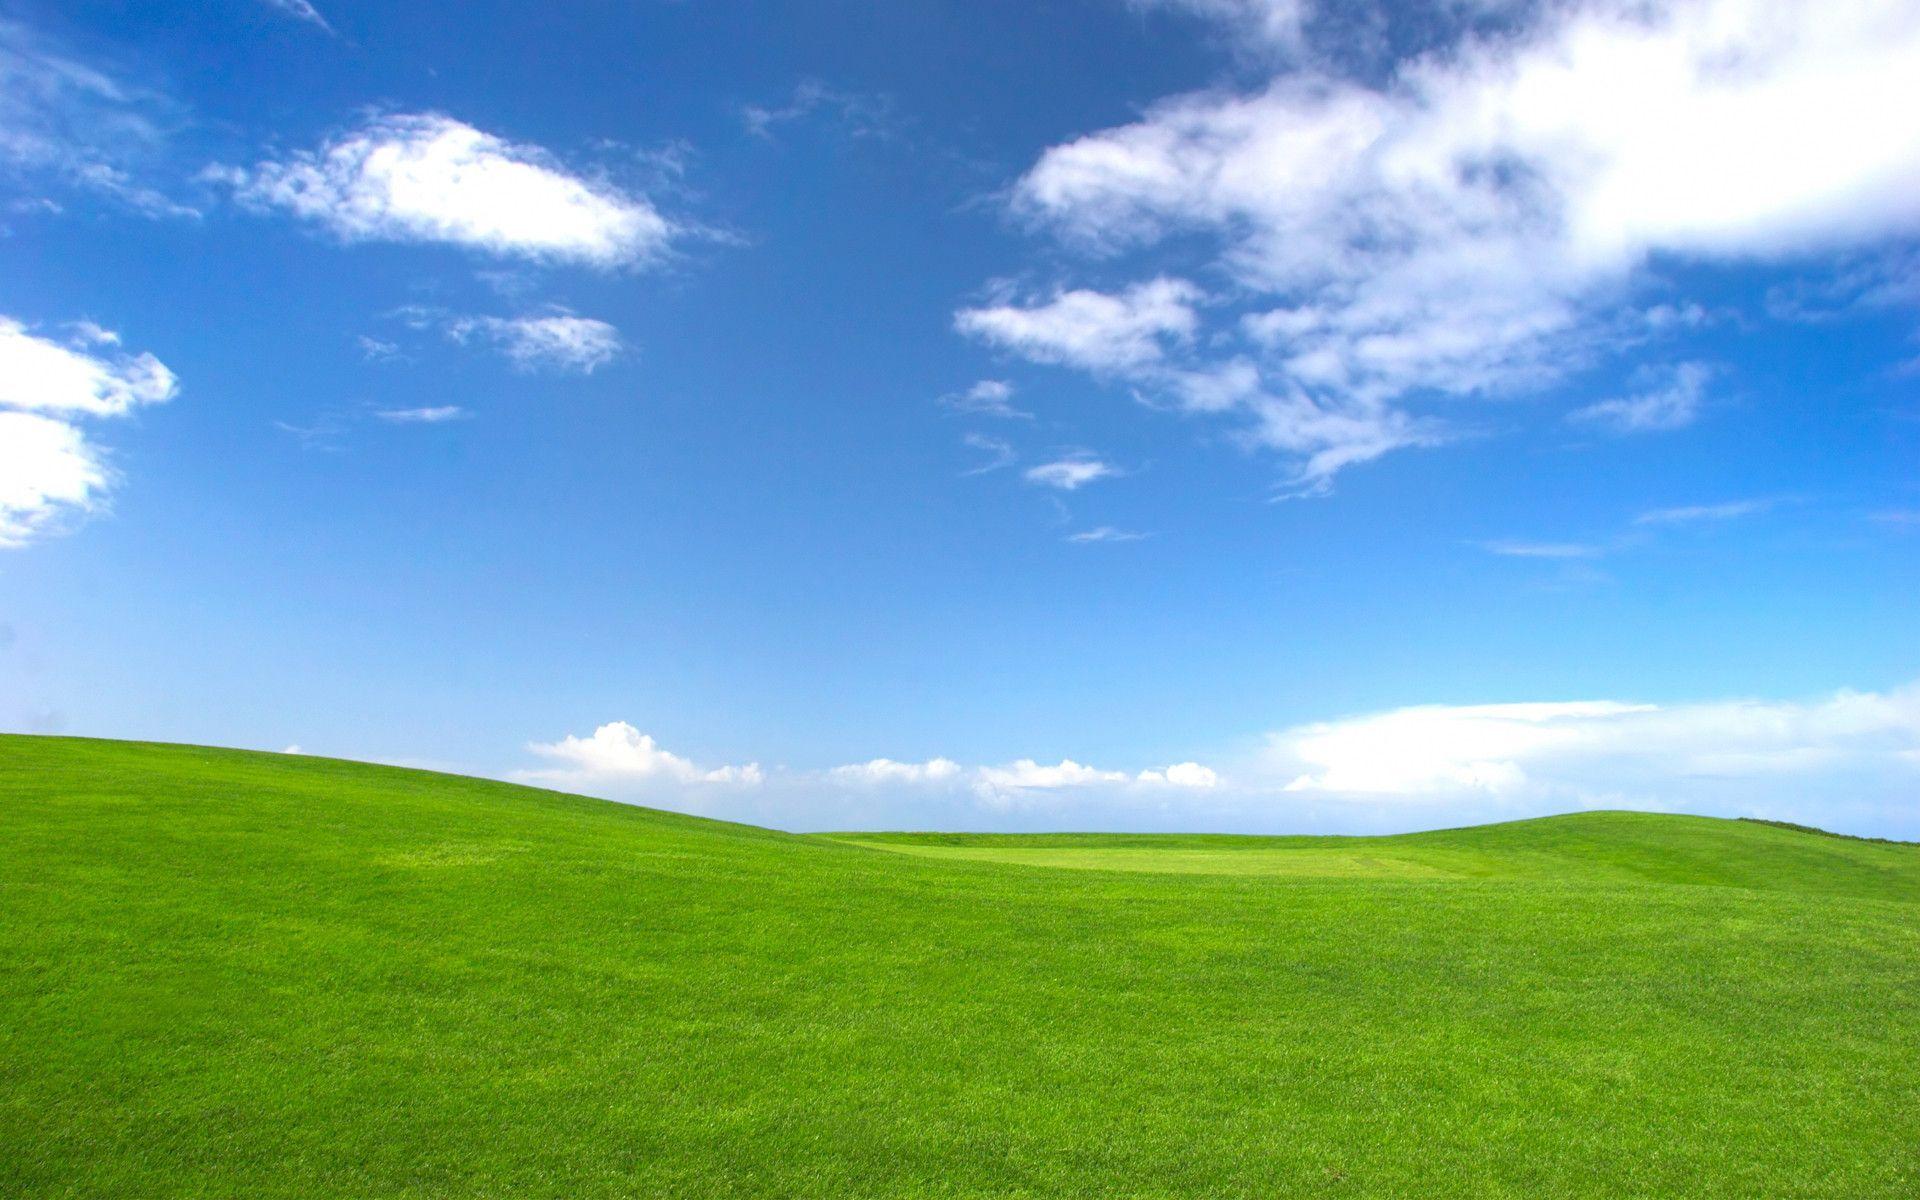 Những hình ảnh đẹp về Windows XP sẽ khiến bạn hiểu rõ vì sao hệ điều hành này từng được yêu thích như vậy. Hãy đắm mình trong những khoảnh khắc đầy cảm xúc và tìm lại ký ức tuổi thơ của mình.